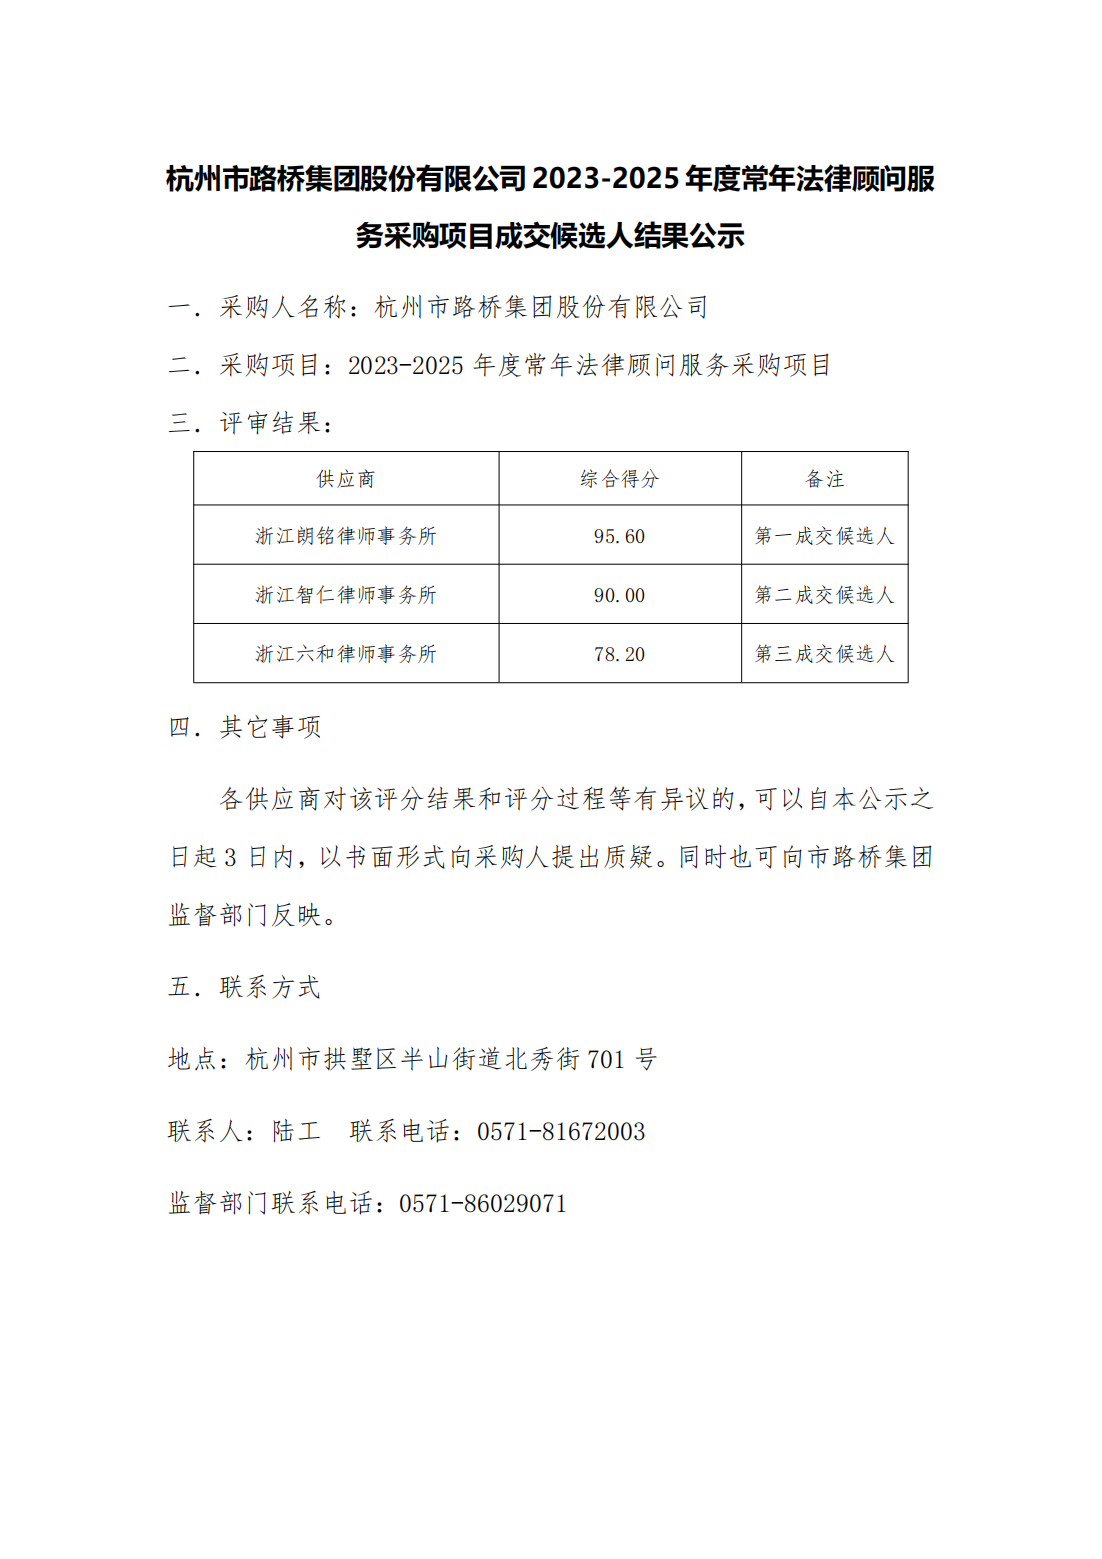 成交候选人结果公示-杭州市路桥集团股份有限公司2023年-2025年顾问律师服务采购项目(2)_00.png